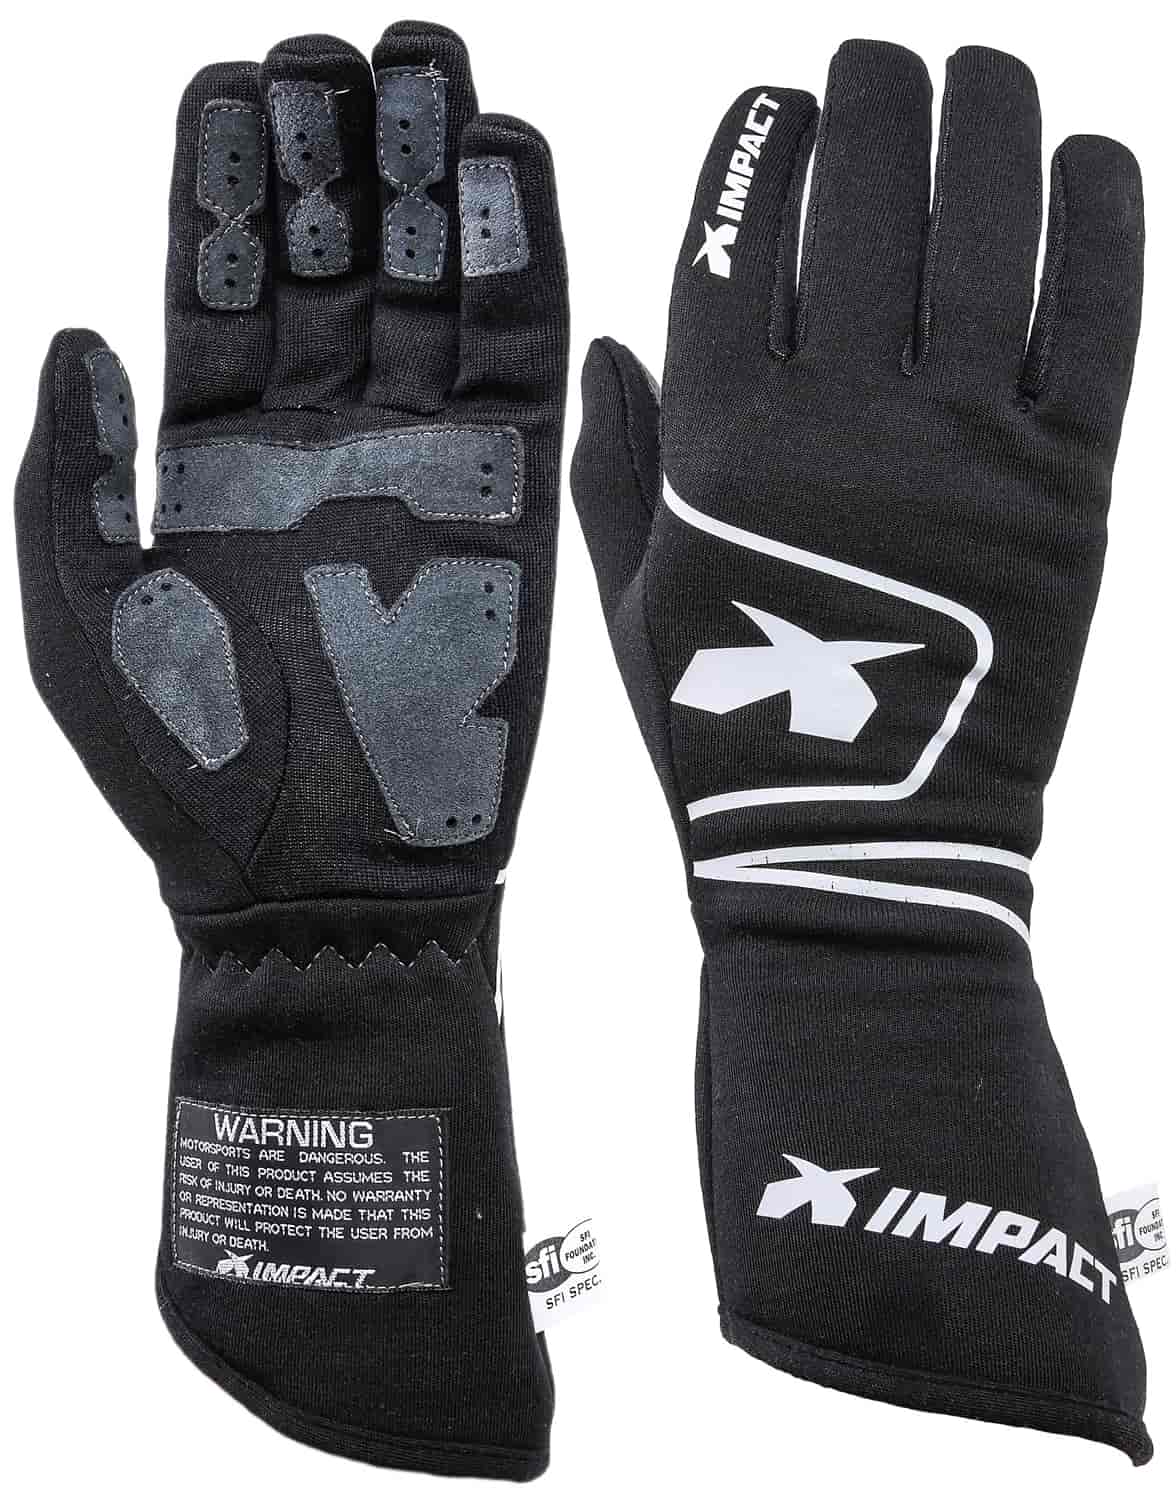 G6 Driving Gloves Medium Black SFI-5